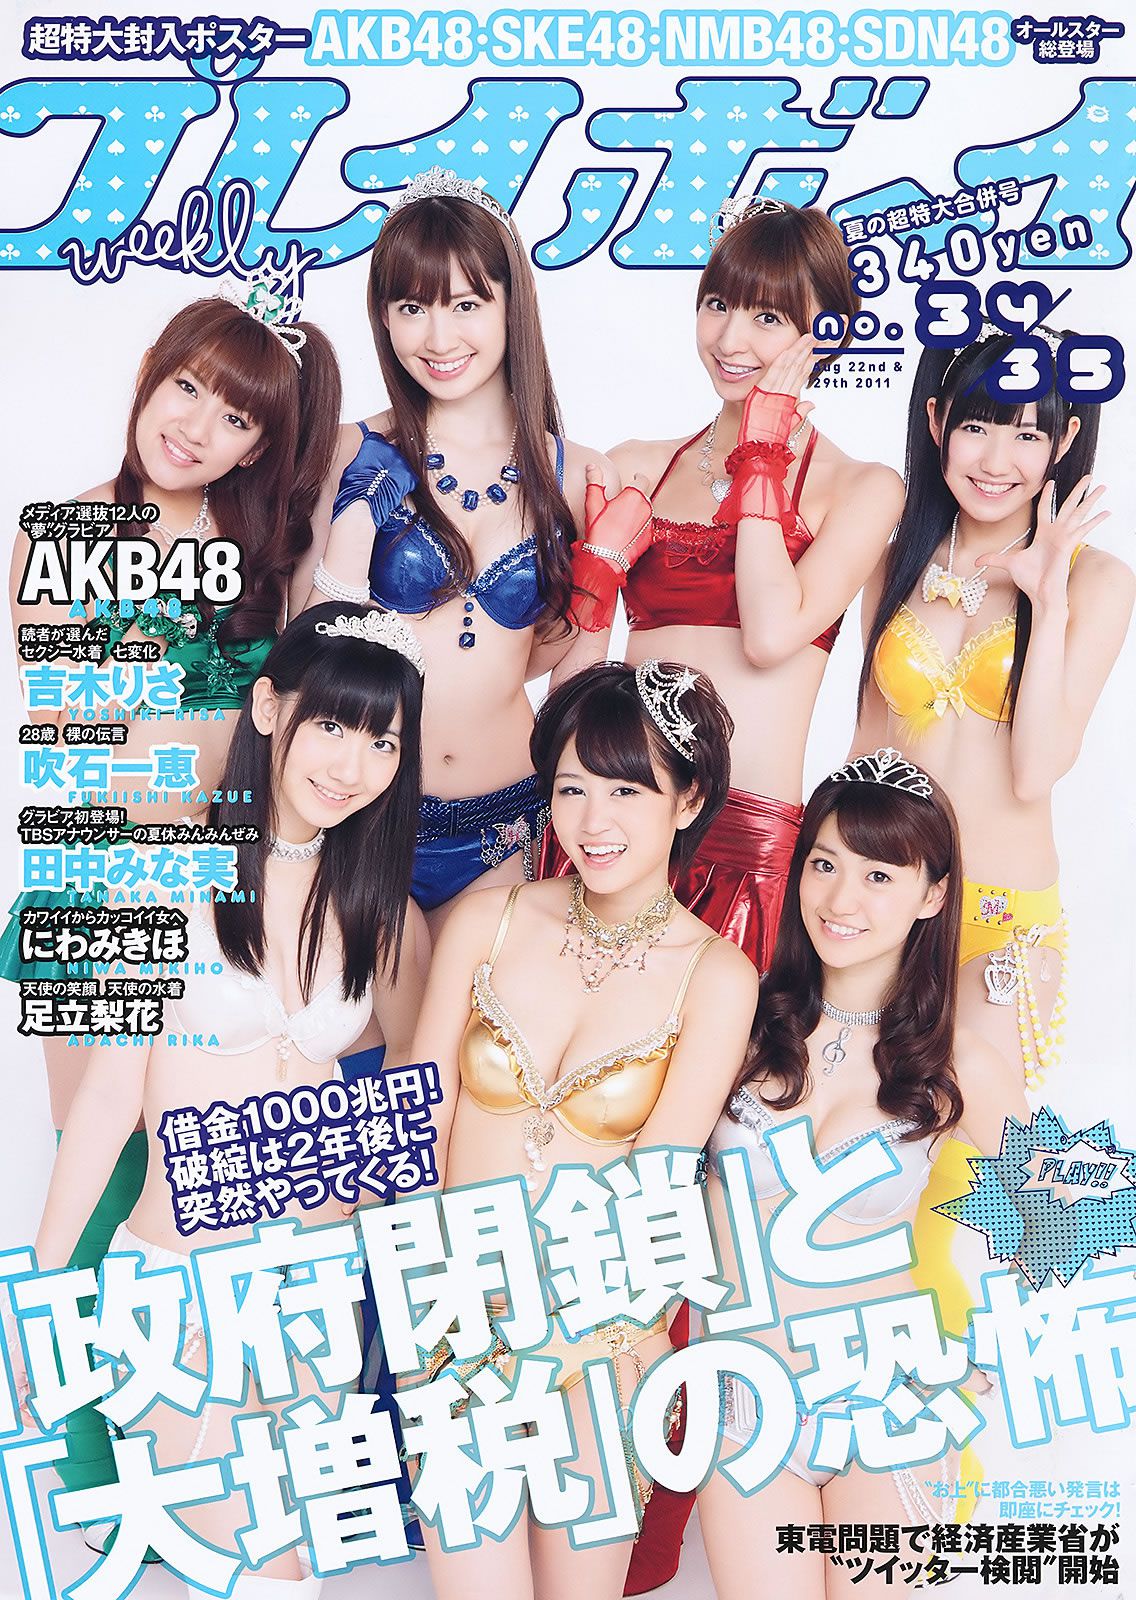 [Weekly Playboy] 2011 No.34-35 AKB48 にわみきほ 足立梨花 吉木りさ 小倉奈々 [41P]